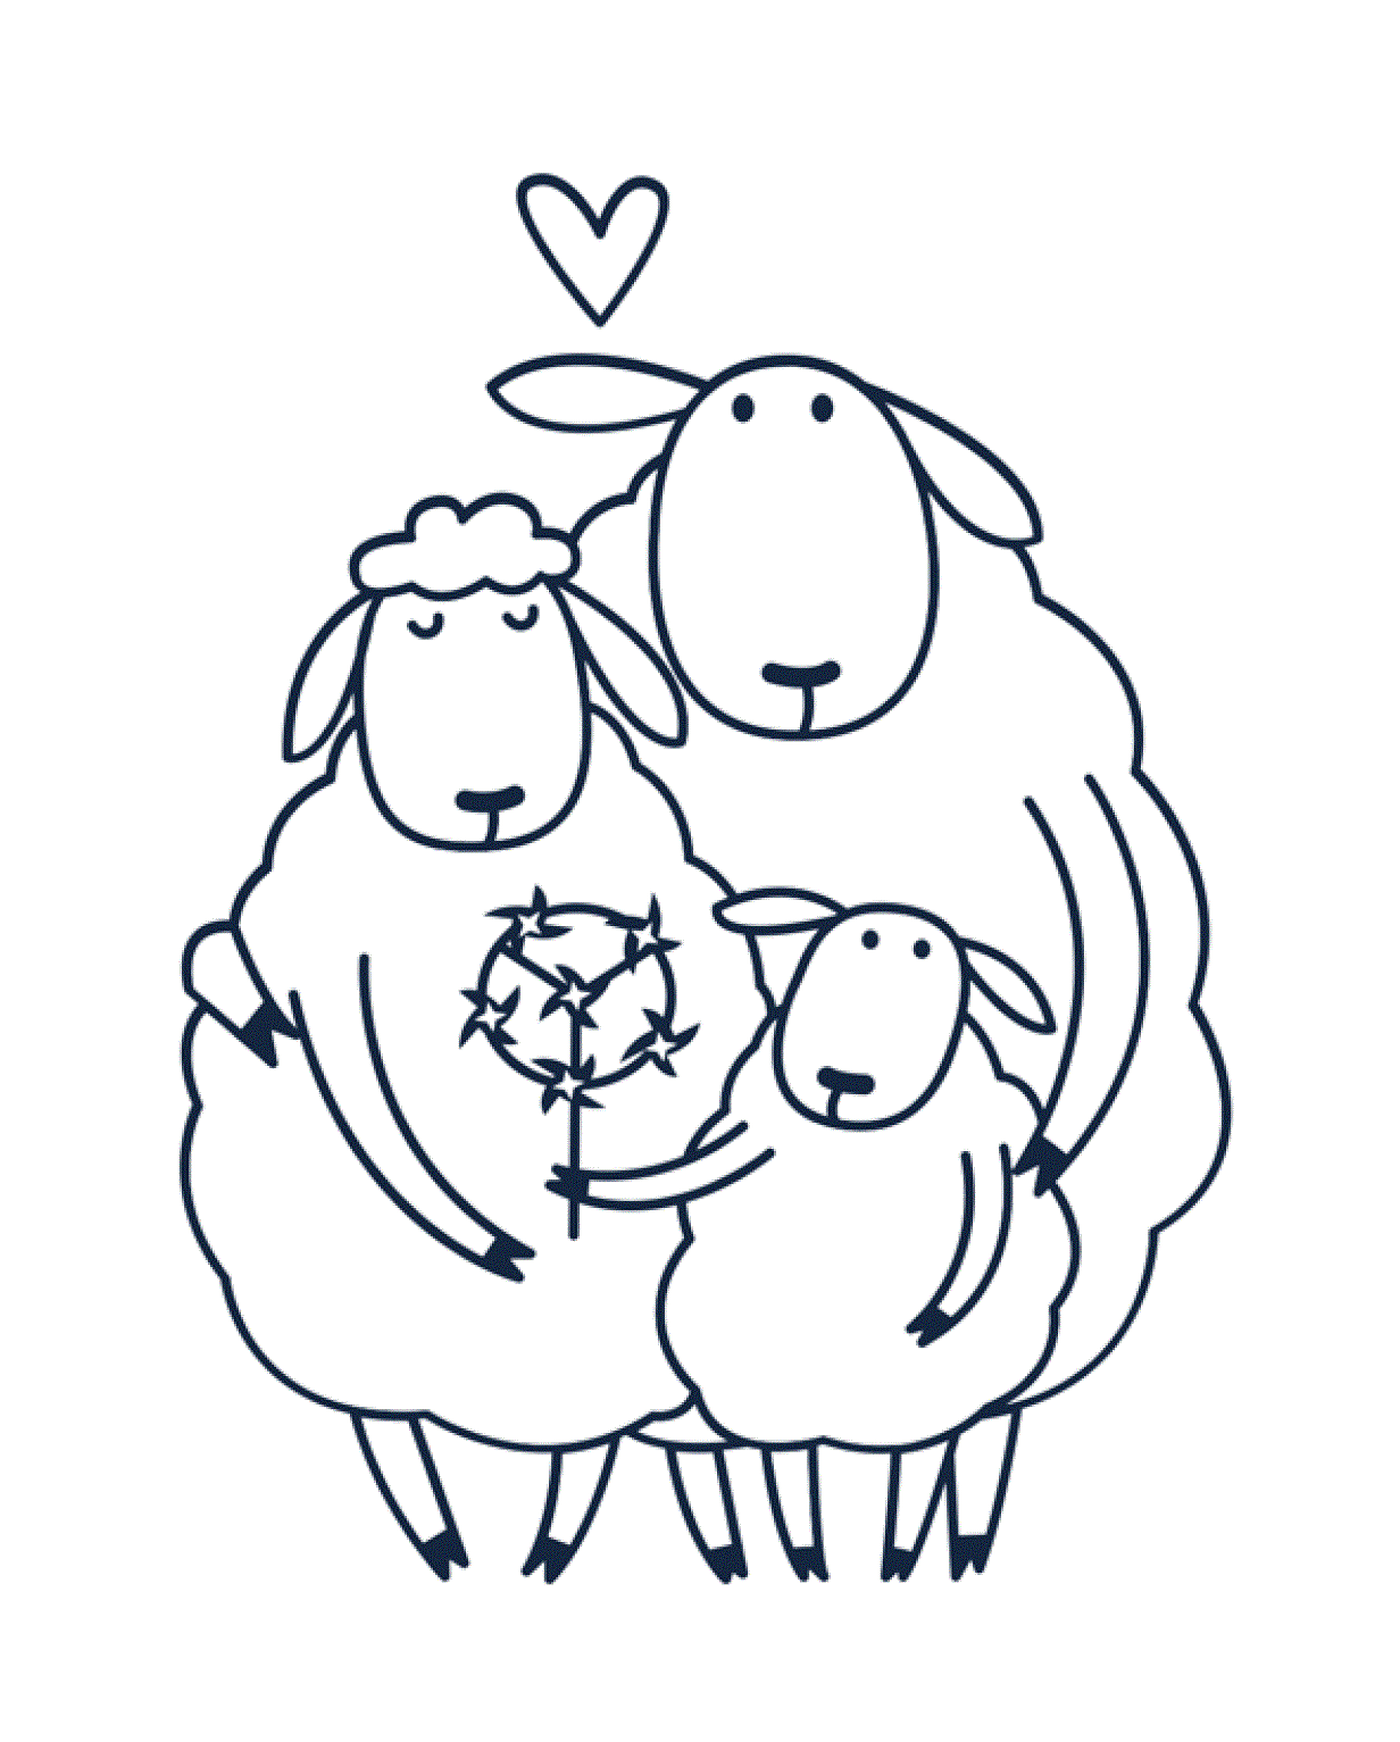  gruppo di ovini insieme 